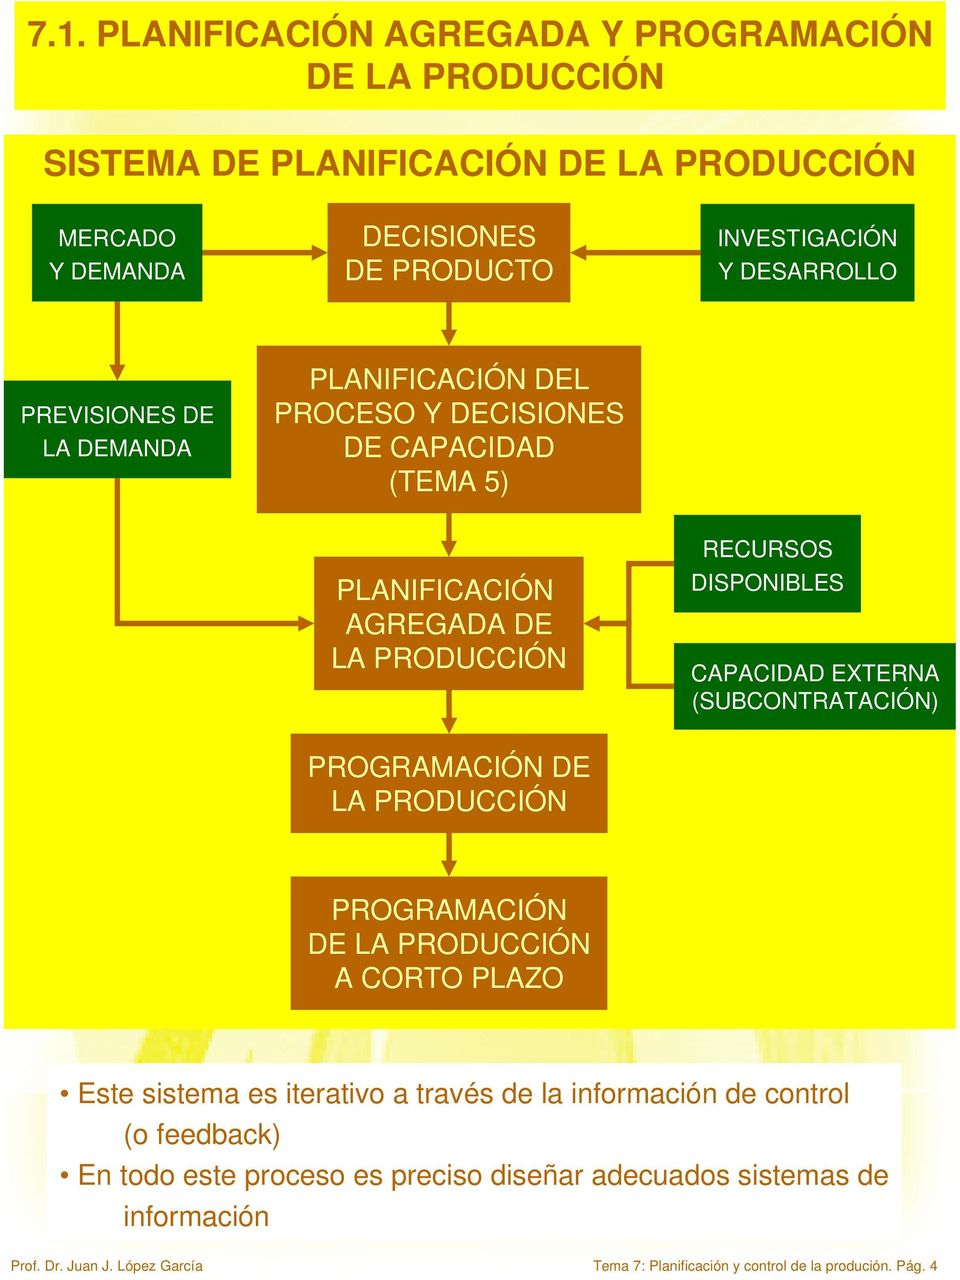 DESARROLLO PREVISIONES DE LA DEMANDA PLANIFICACIÓN DEL PROCESO Y DECISIONES DE CAPACIDAD (TEMA 5) PLANIFICACIÓN AGREGADA DE LA PRODUCCIÓN RECURSOS DISPONIBLES